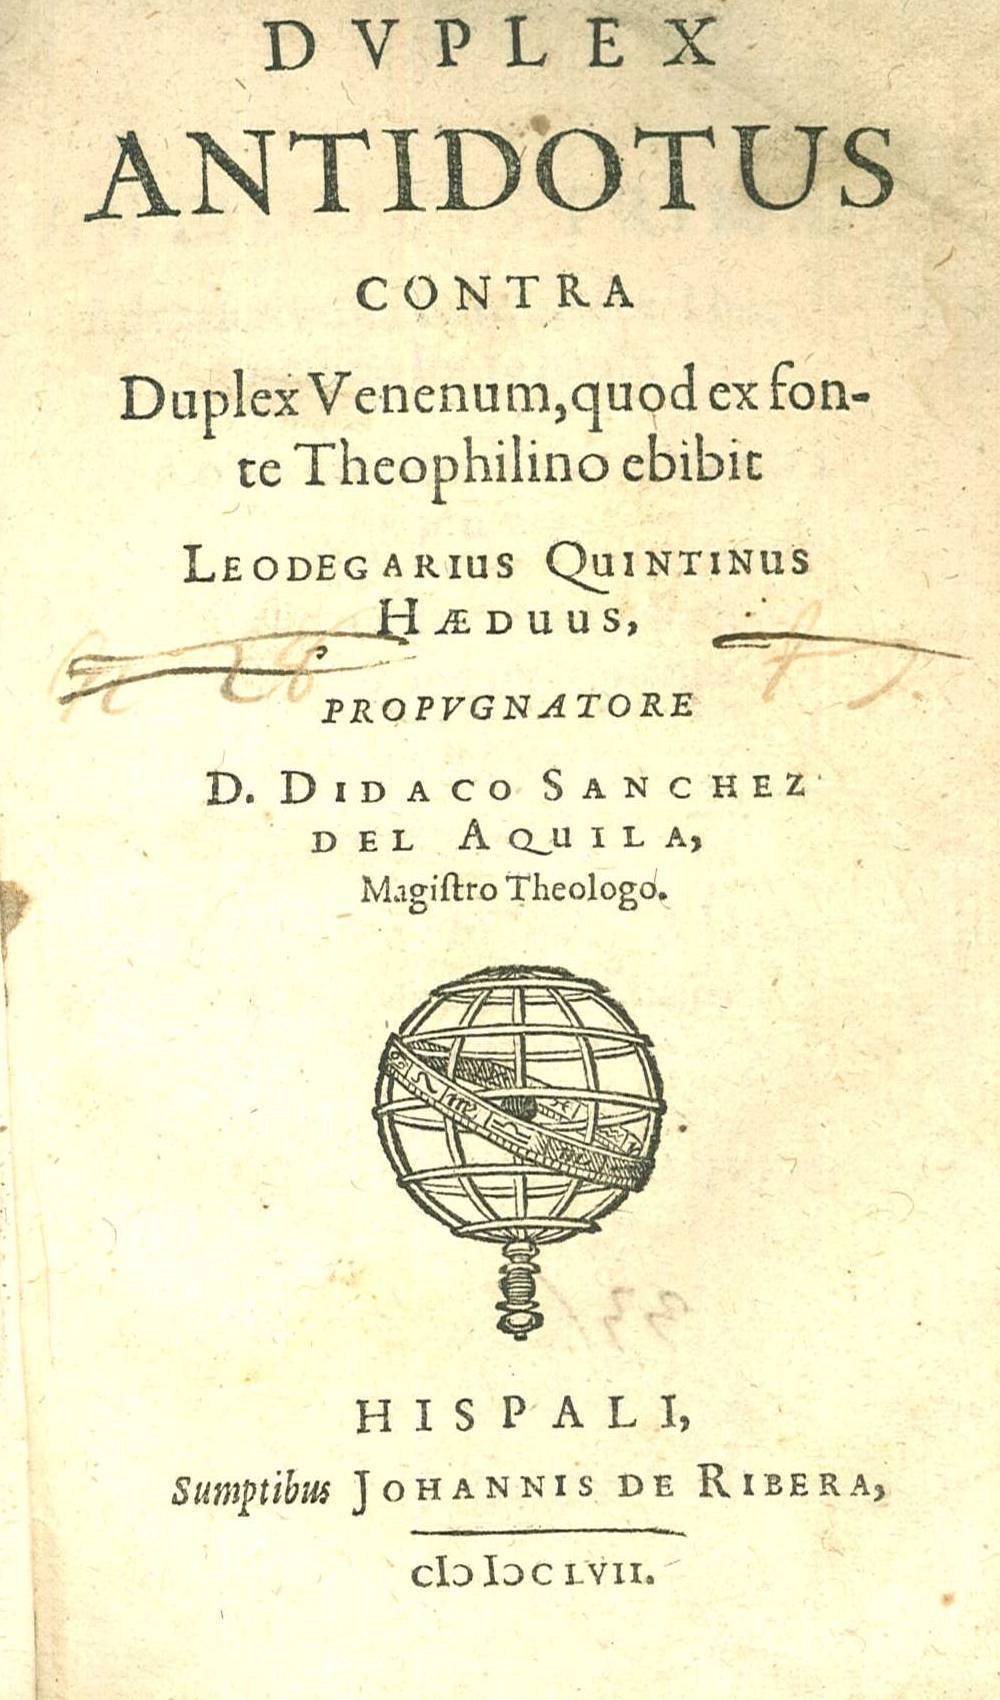 Dvplex antidotus contra duplex venenum, quod ex fonte Theophilino ebibit